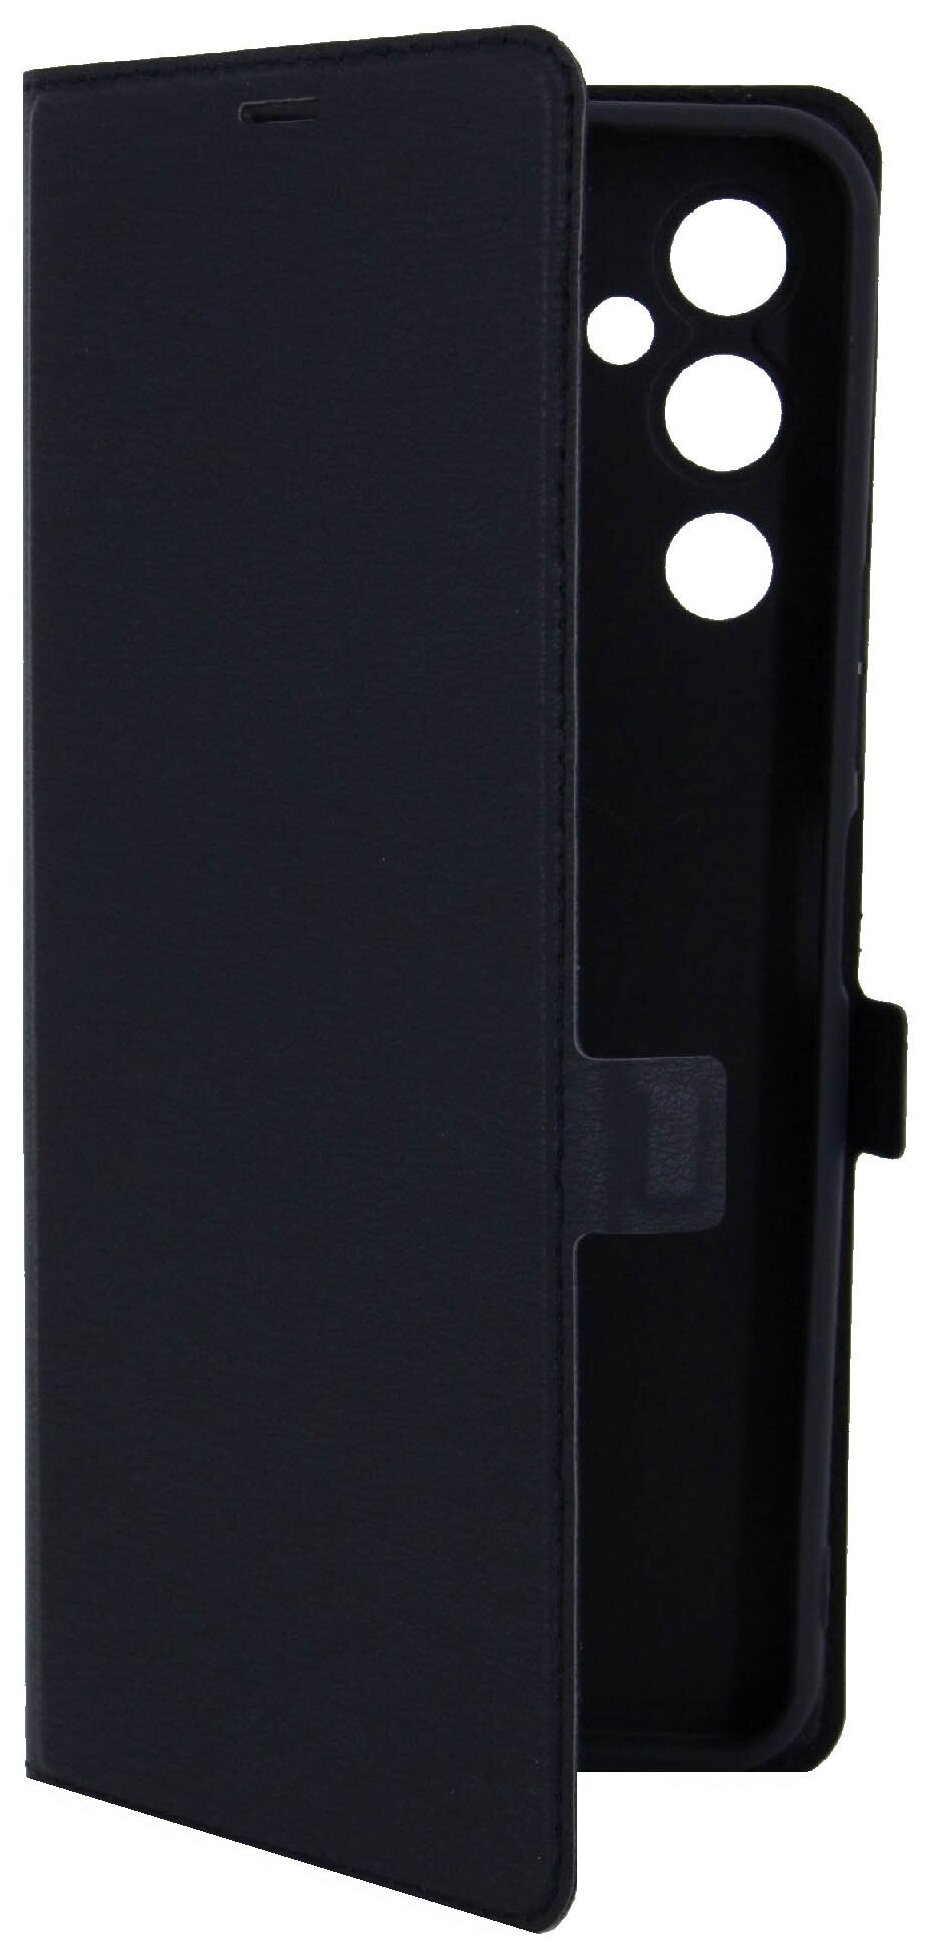 Чехол на Tecno Pova 4 (Техно Пова 4 ) черный чехол книжка эко-кожа с функцией подставки отделением для карт и магнитами Book case Brozo